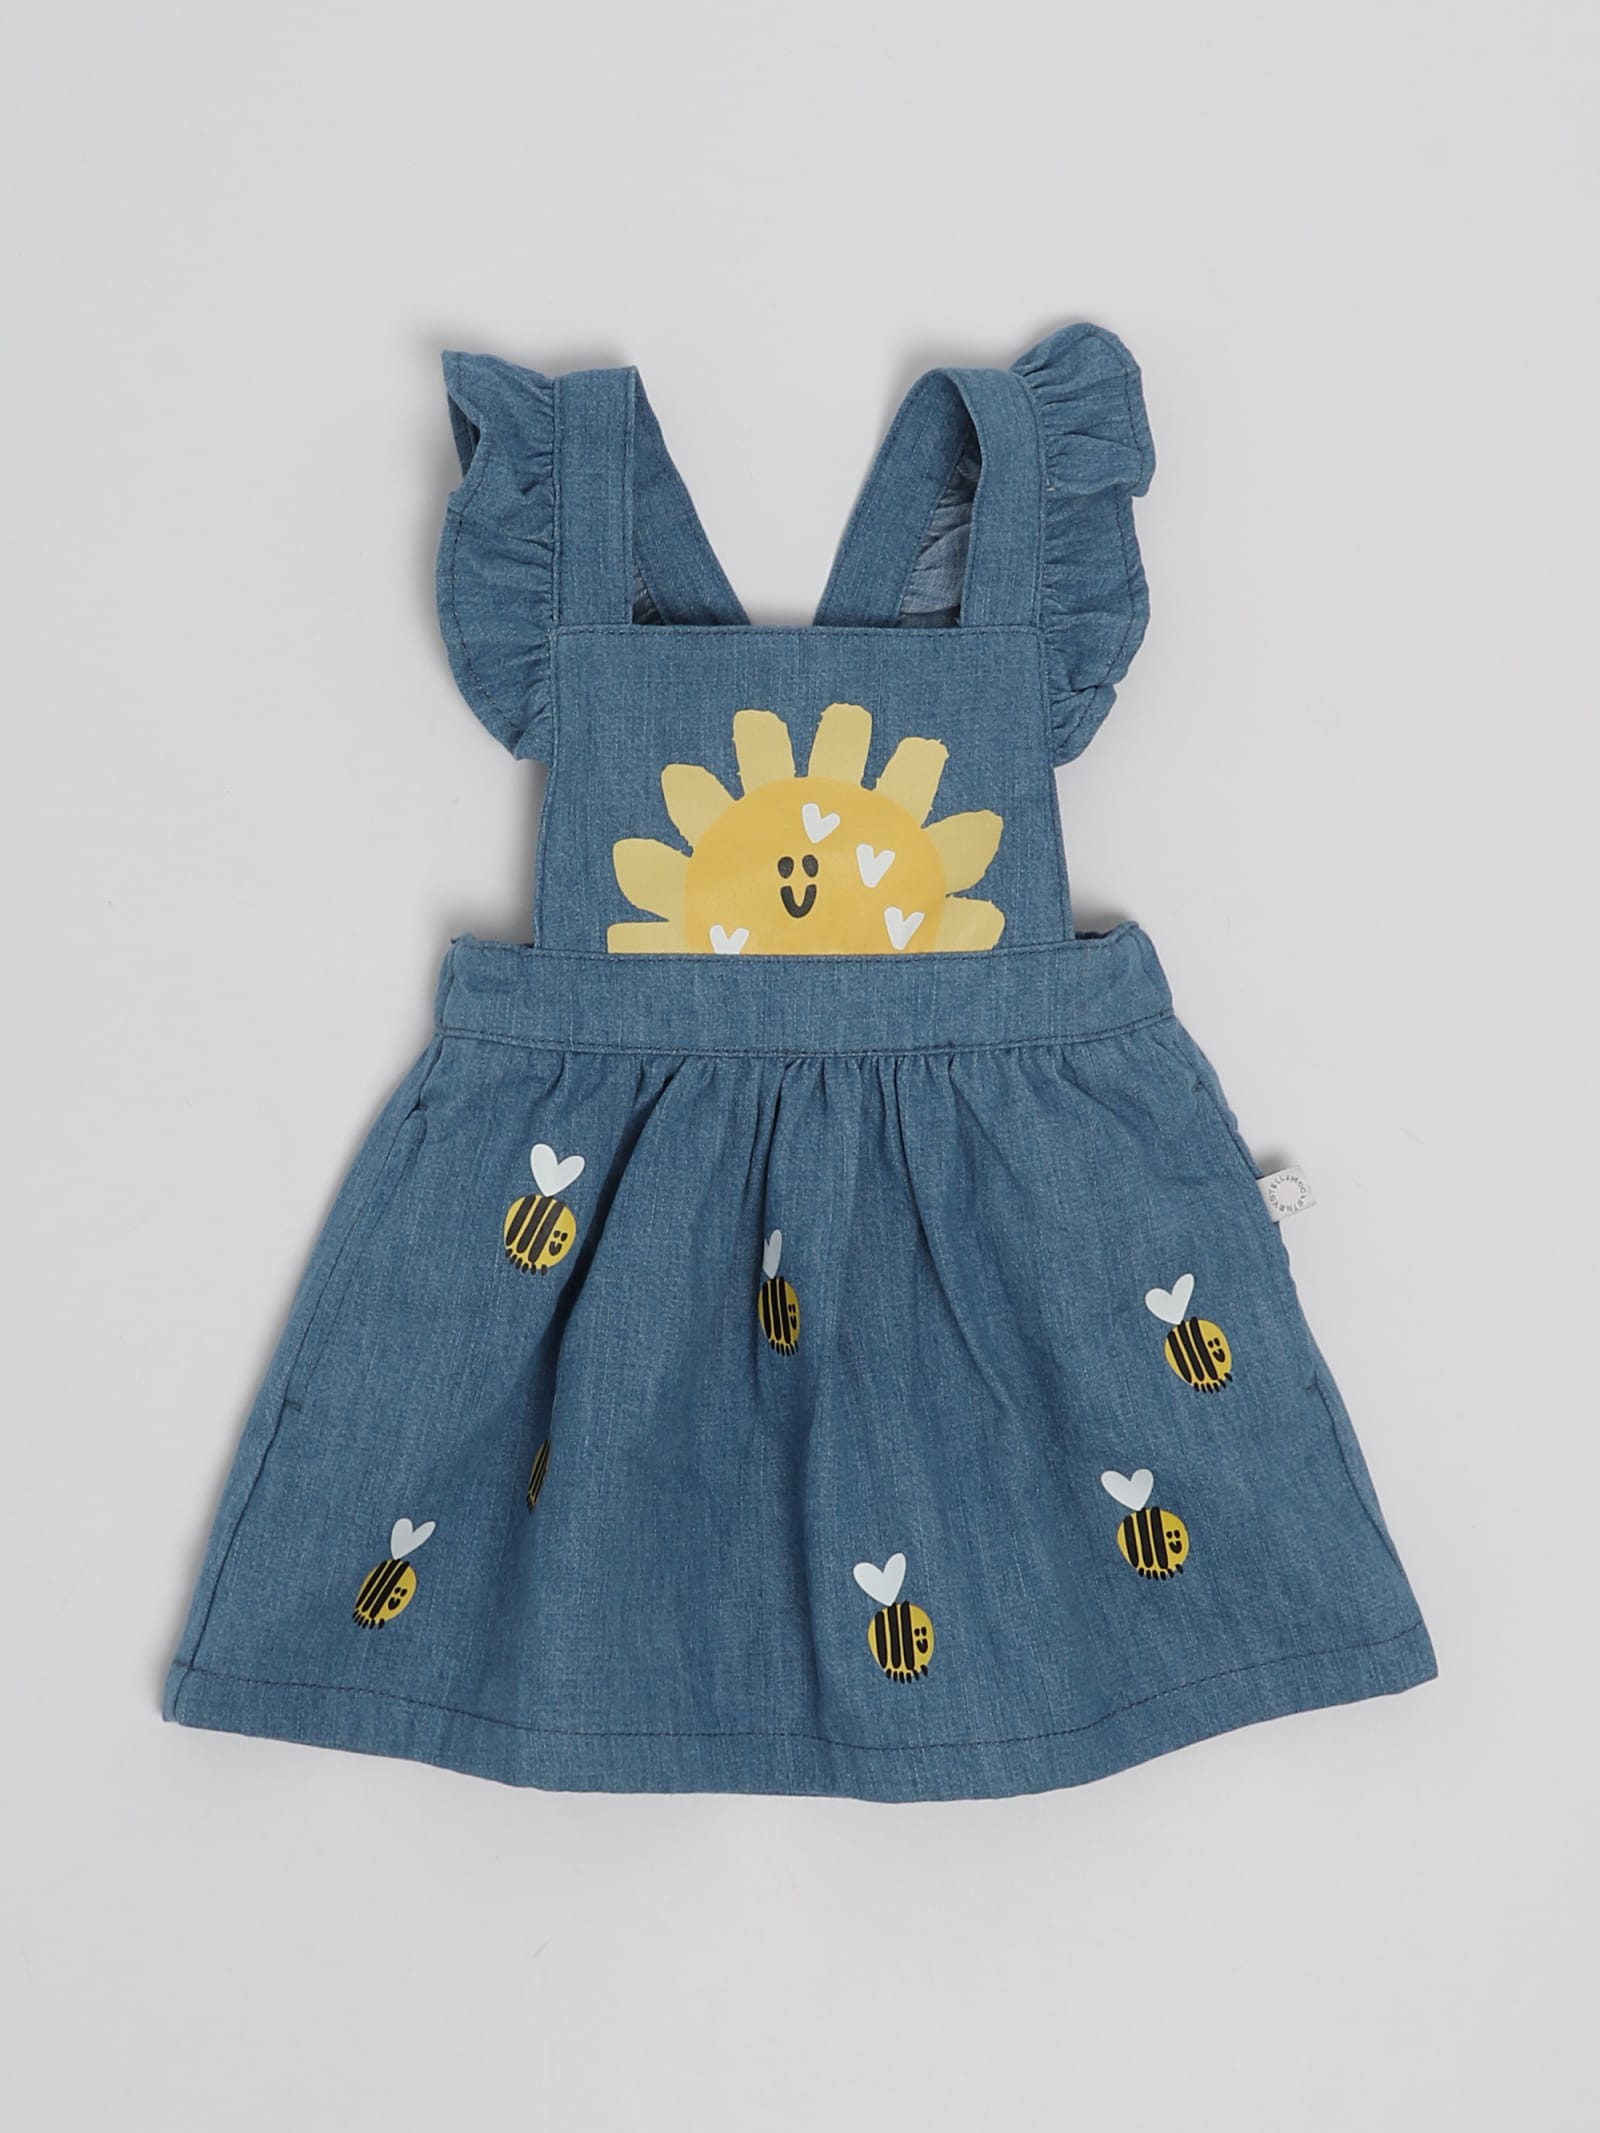 Stella Mccartney Babies' Dress Dress In Blue